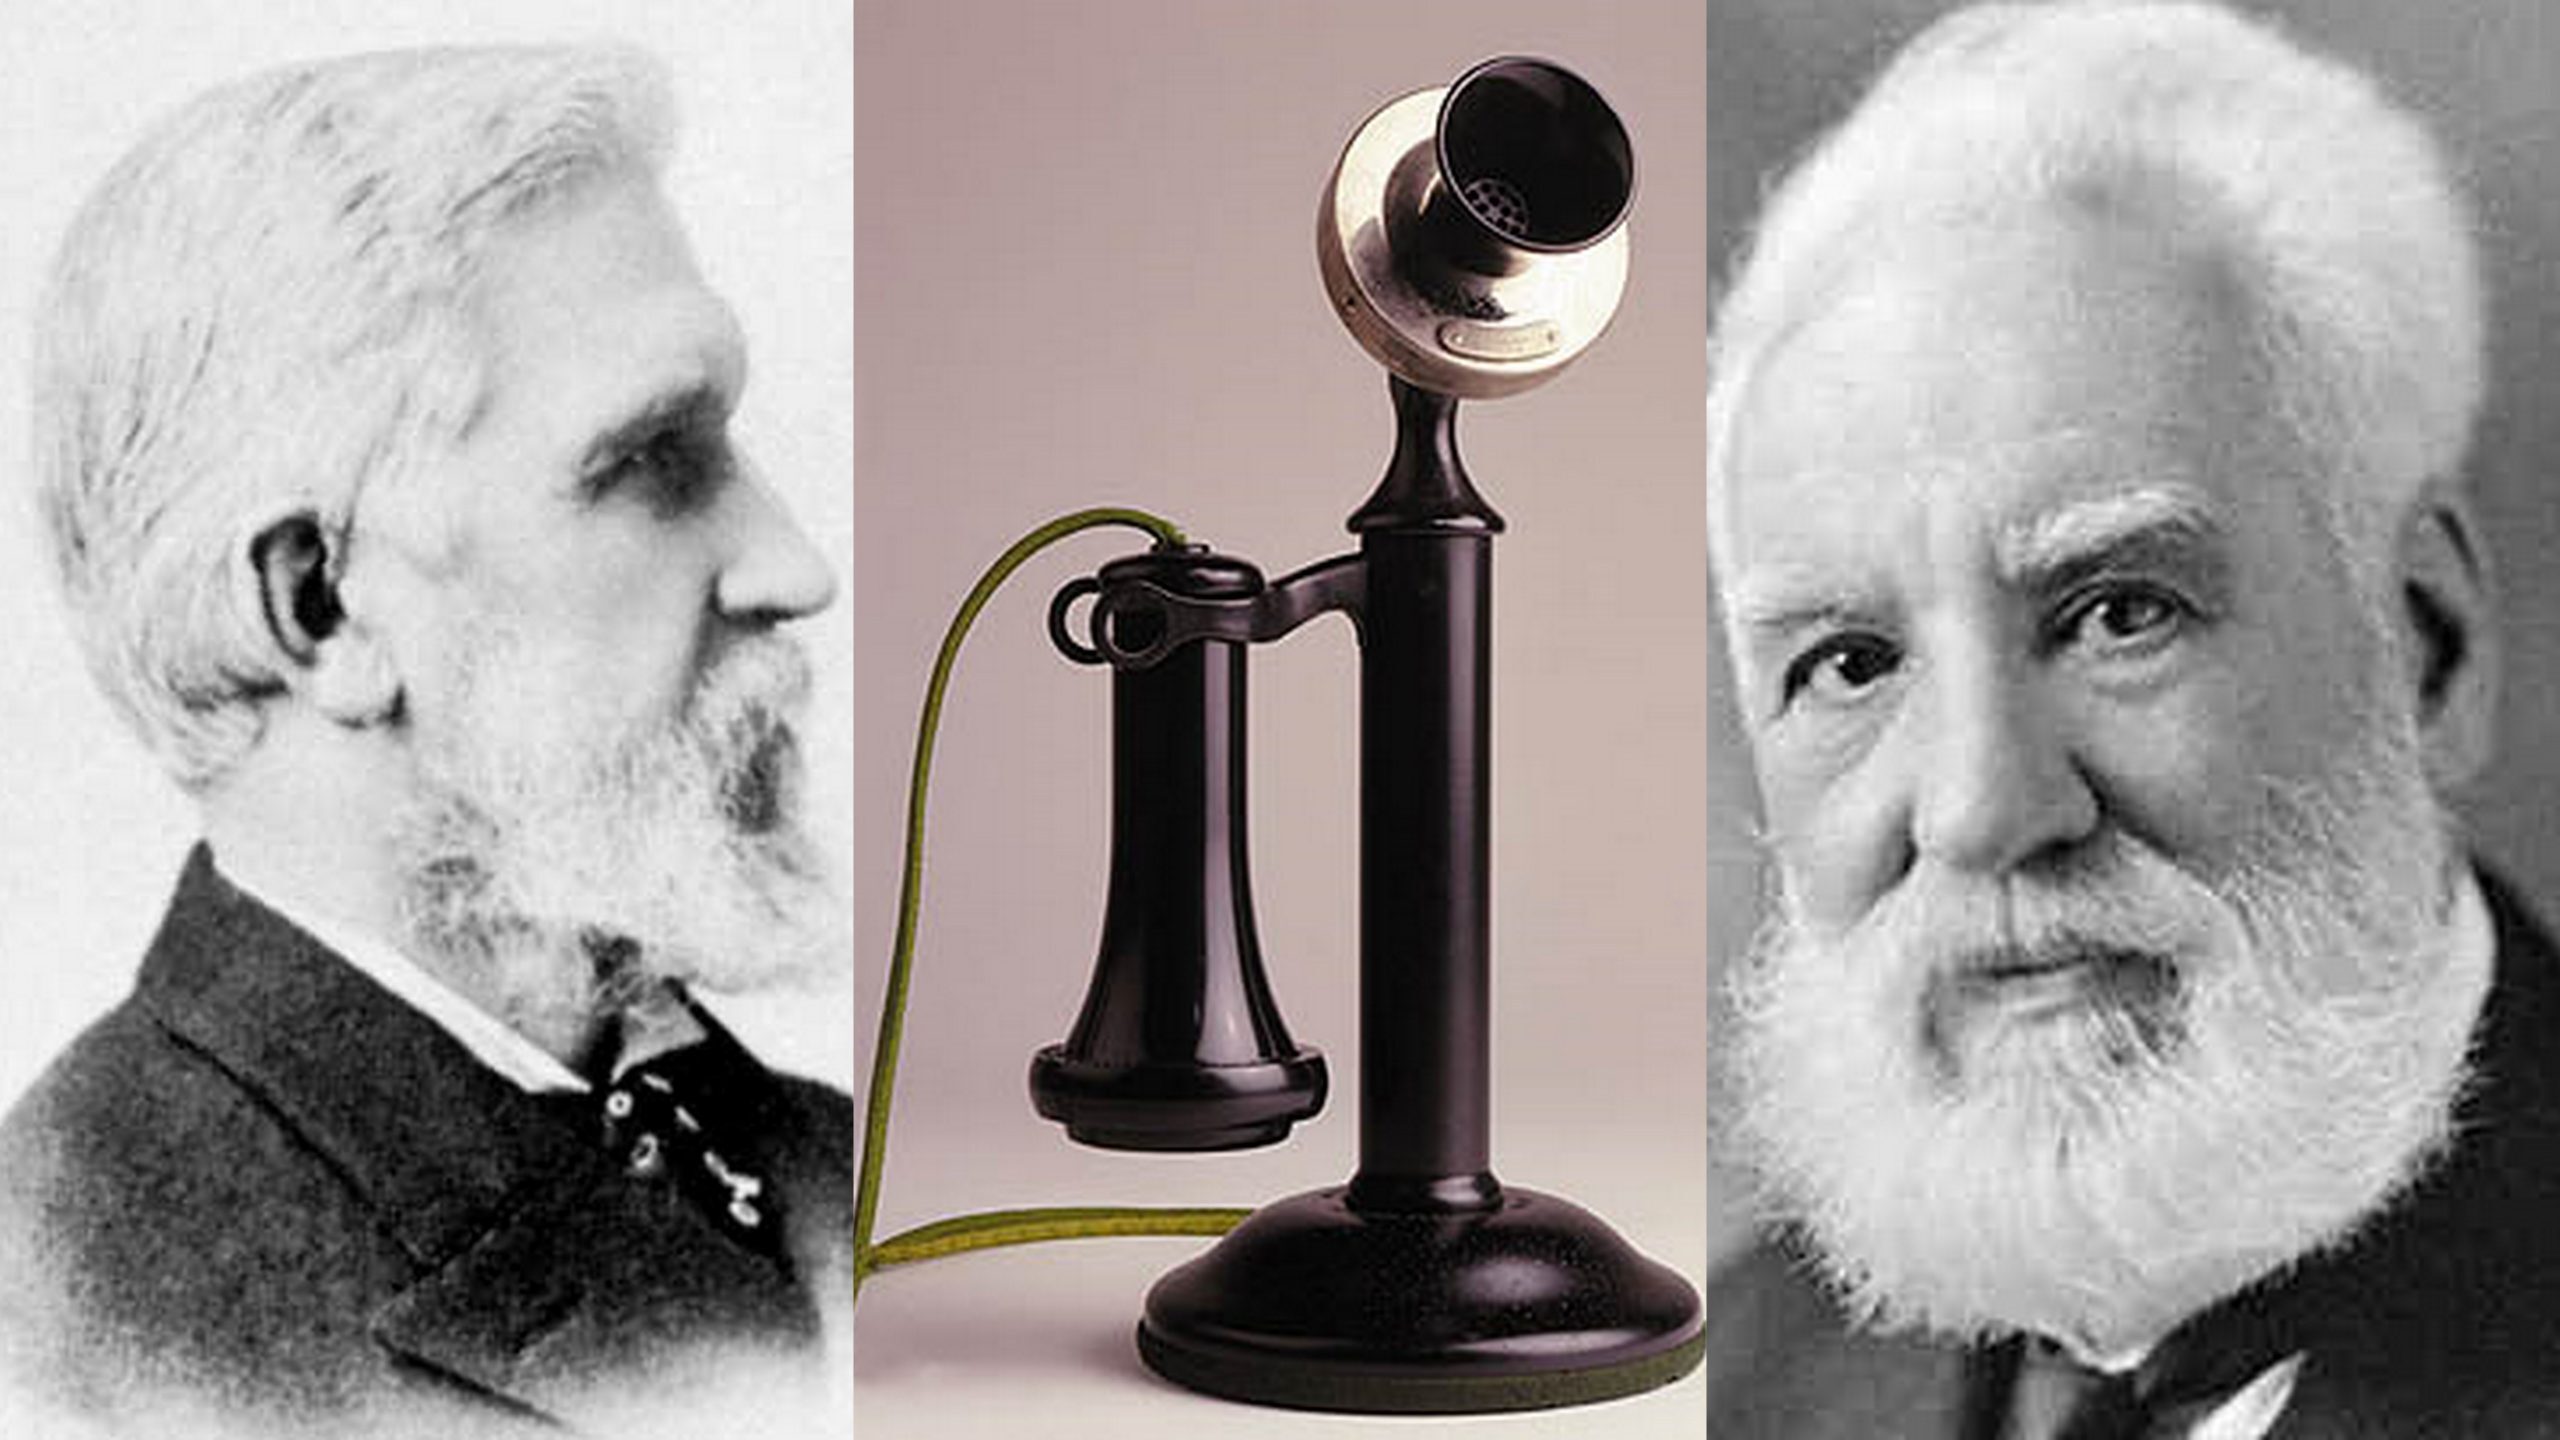 مخترع تلفن کیست؟